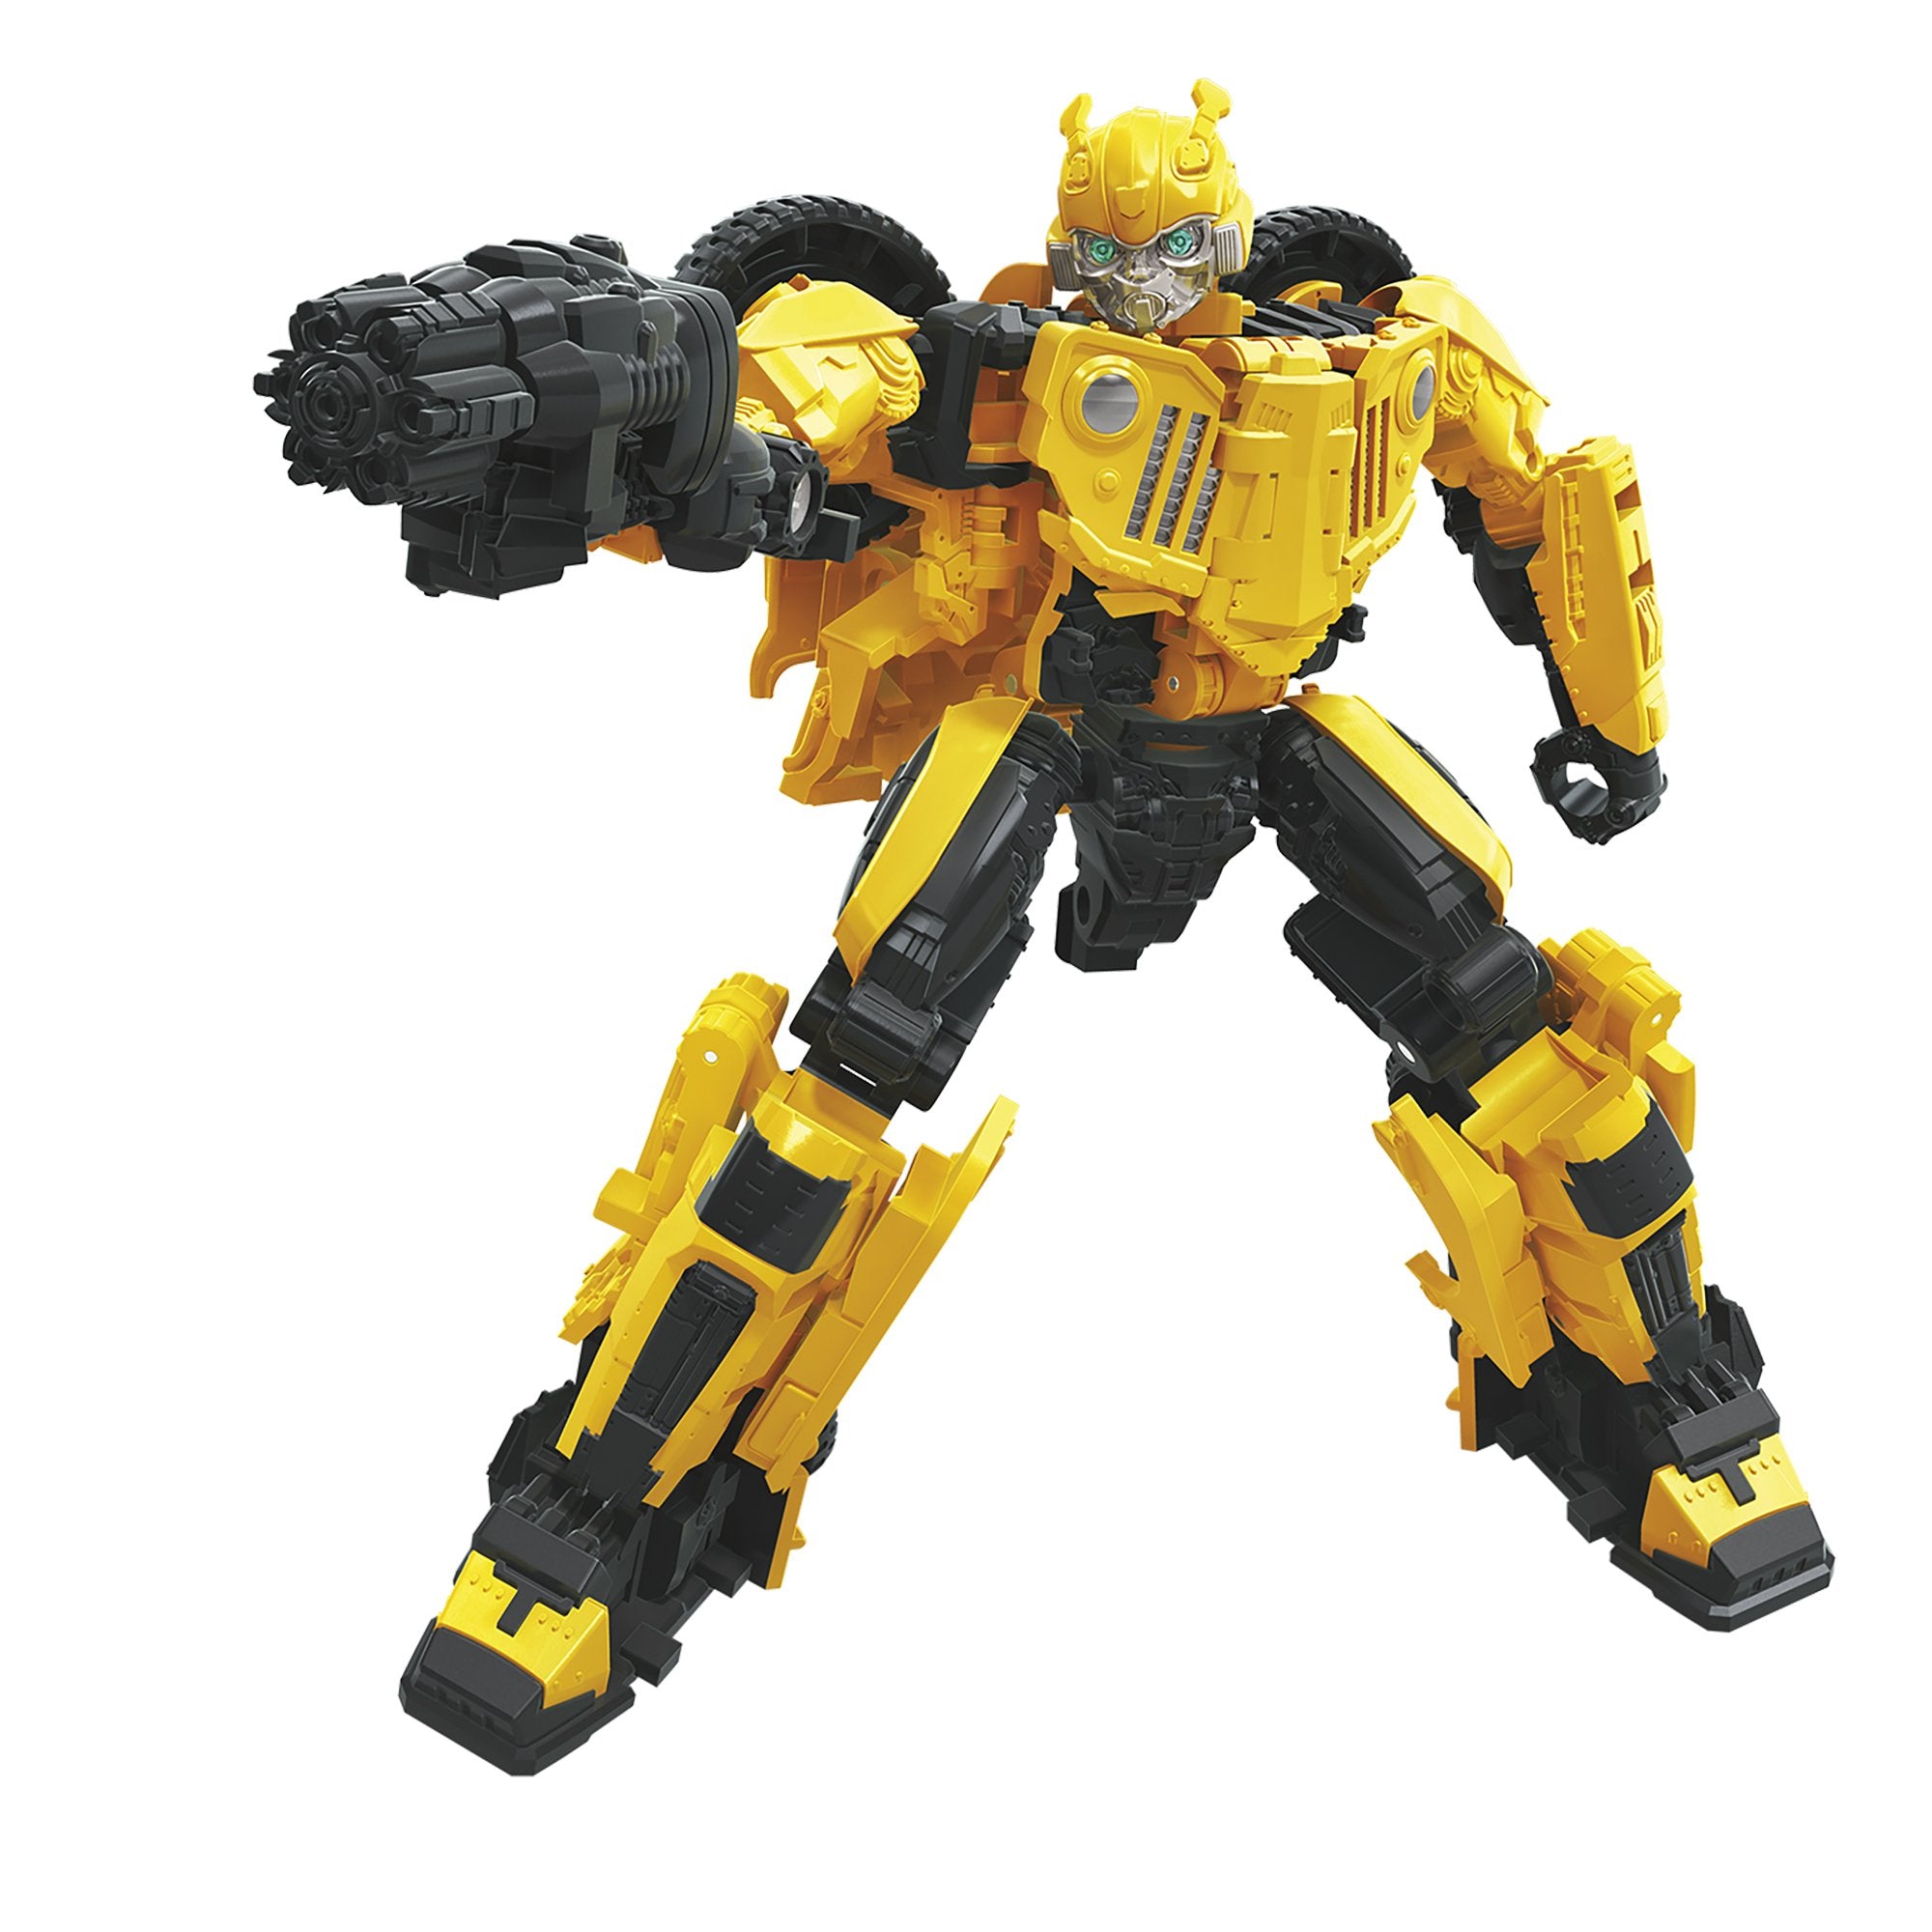 Hasbro - Transformers Generations - Studio Series - Deluxe - Offroad Bumblebee, Roadbuster, Shatter (Set of 3)